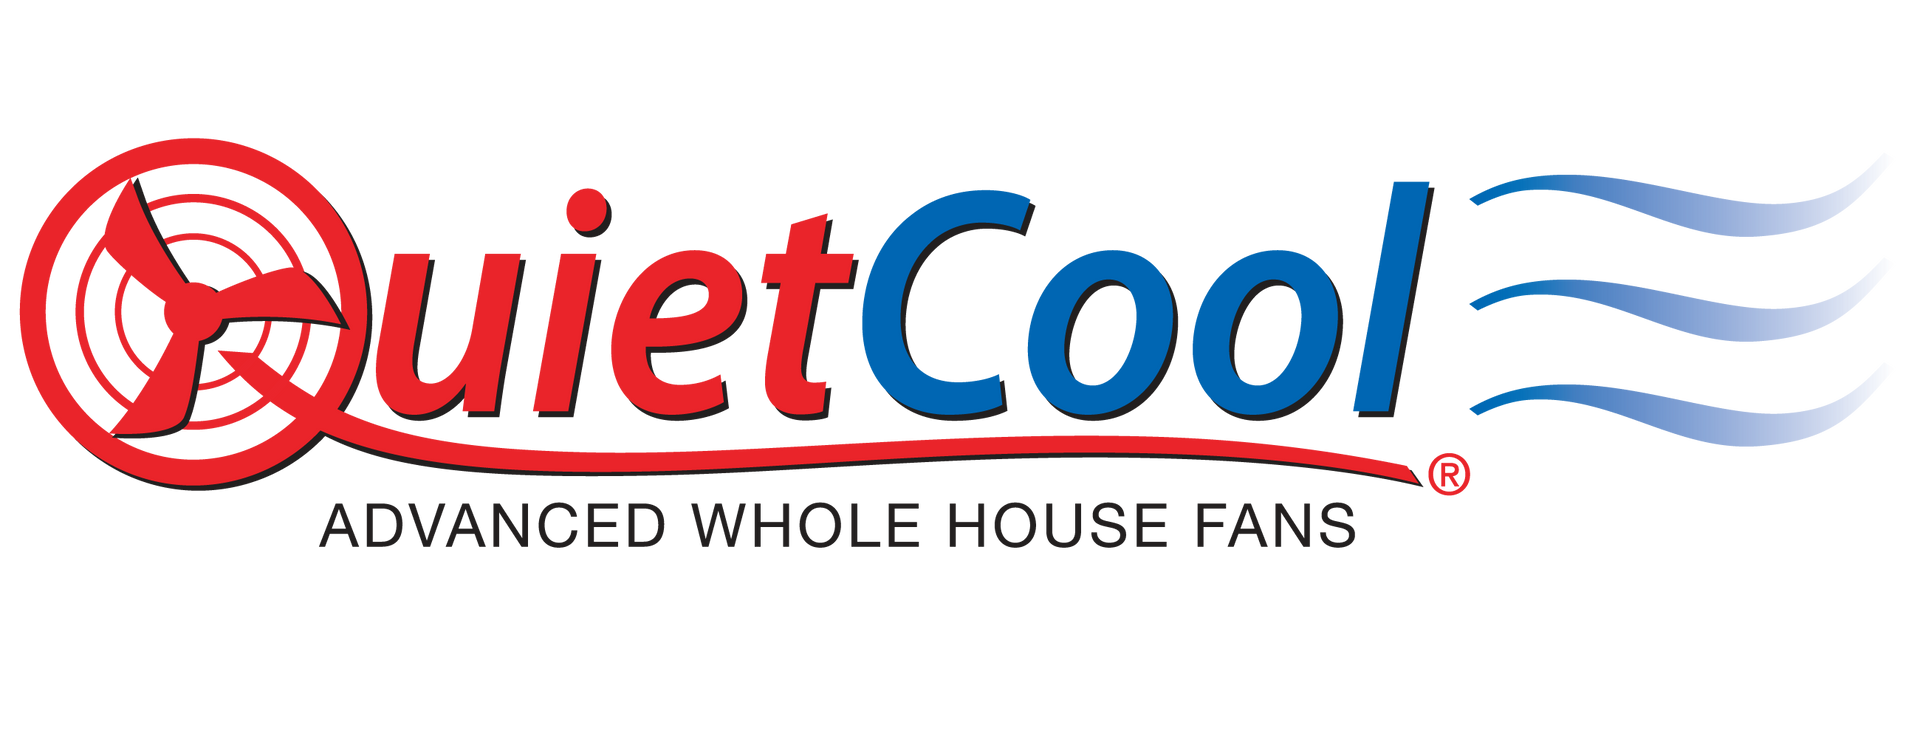 QuietCool logo